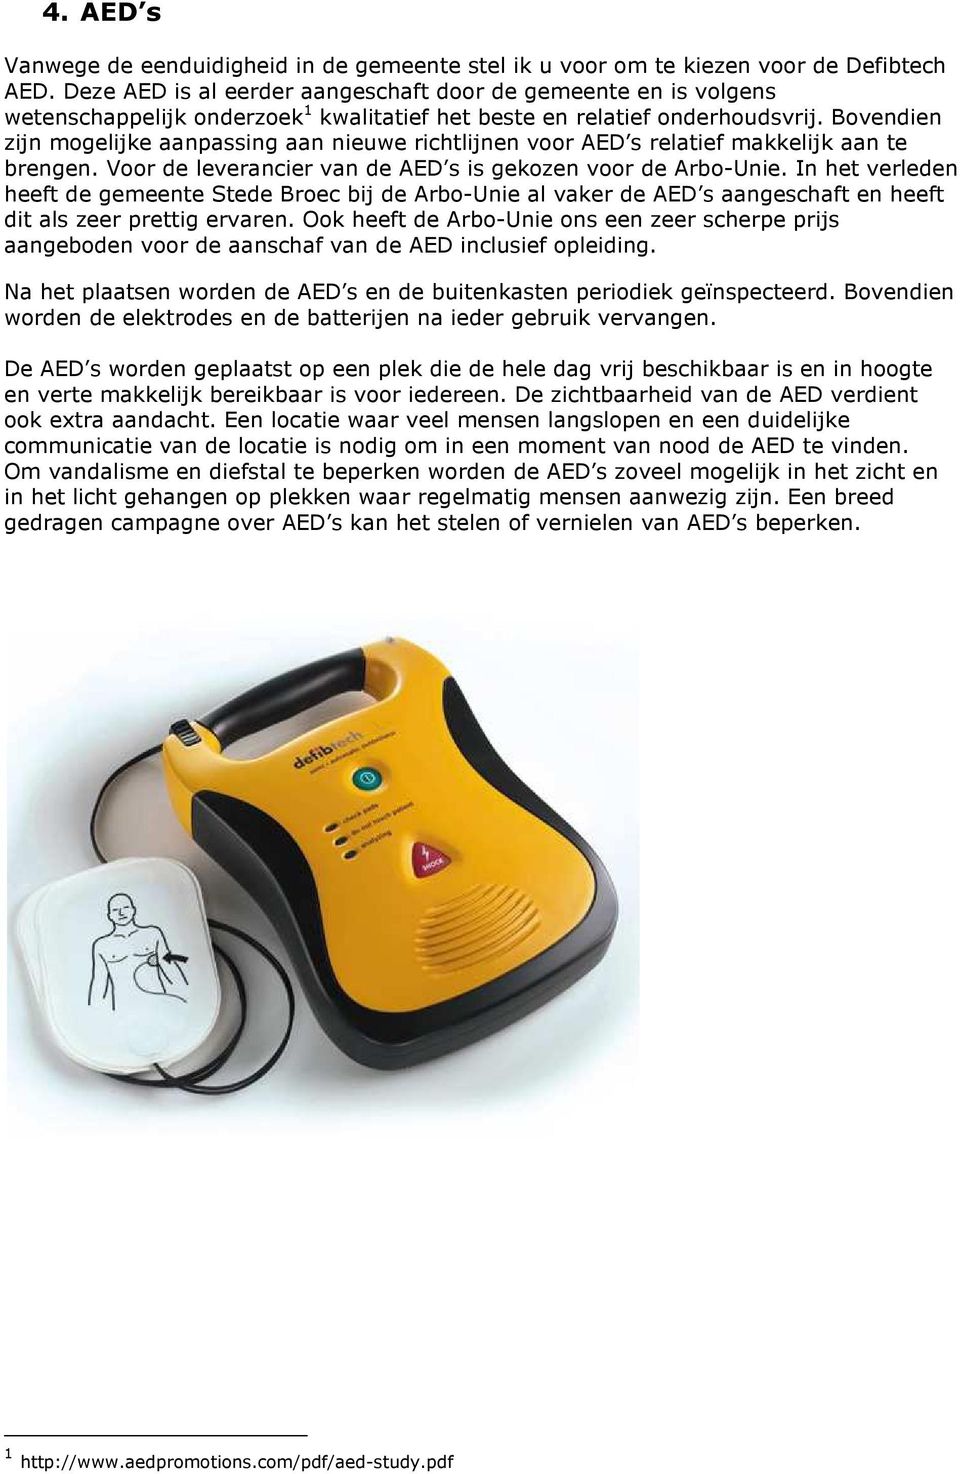 Bovendien zijn mogelijke aanpassing aan nieuwe richtlijnen voor AED s relatief makkelijk aan te brengen. Voor de leverancier van de AED s is gekozen voor de Arbo-Unie.